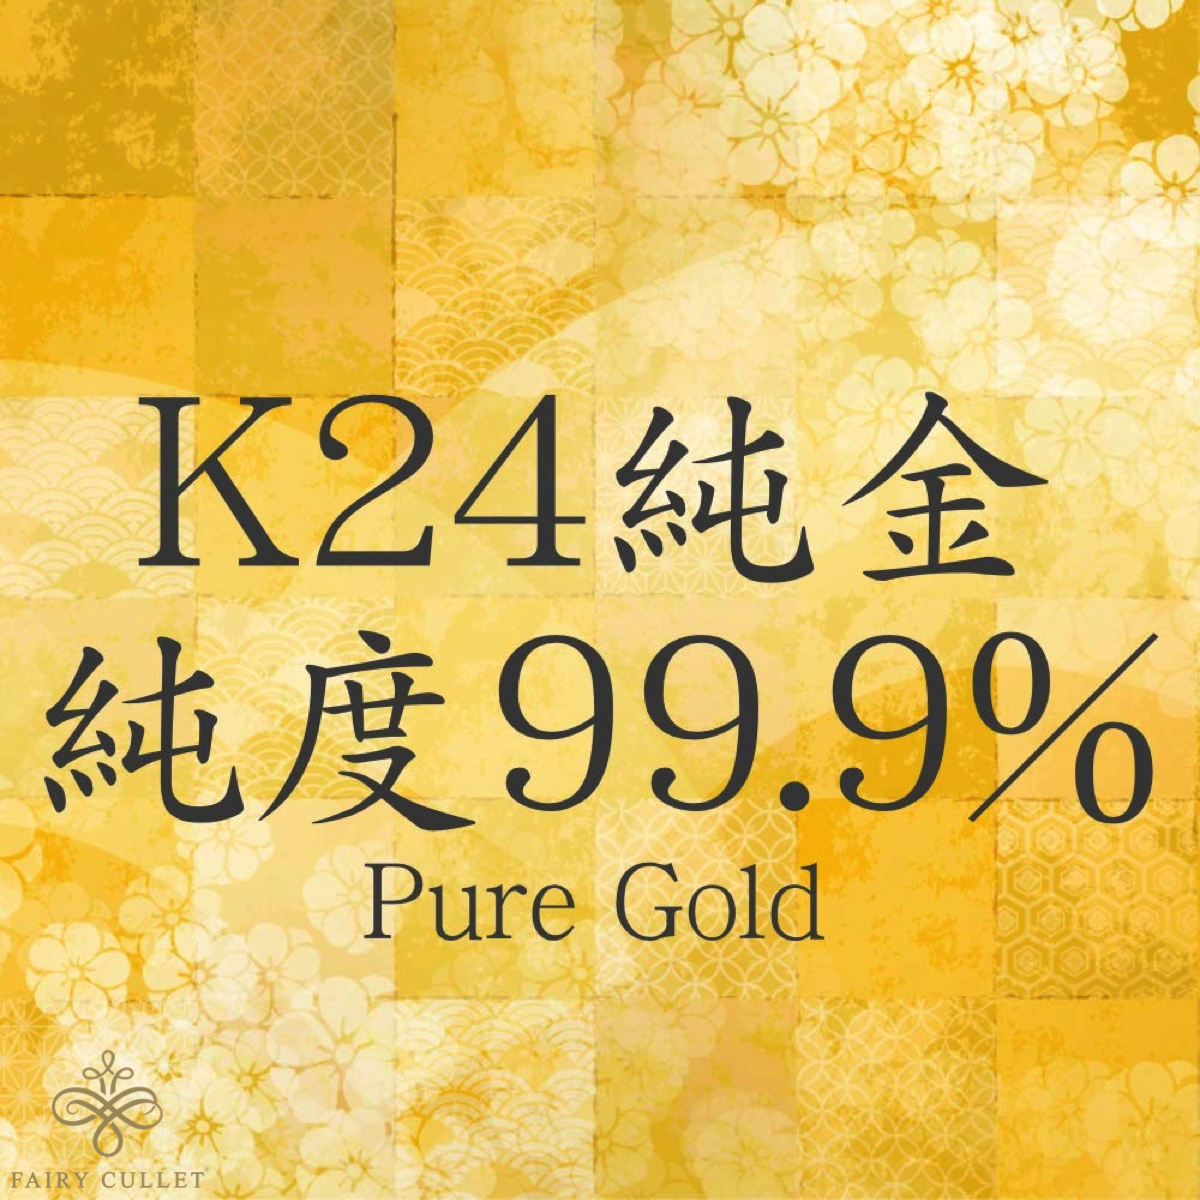 24 золотой колье K24 2 поверхность плоский цепь сделано в Японии оригинальный золотой сертификация печать 9g 45cm скидка колесо 